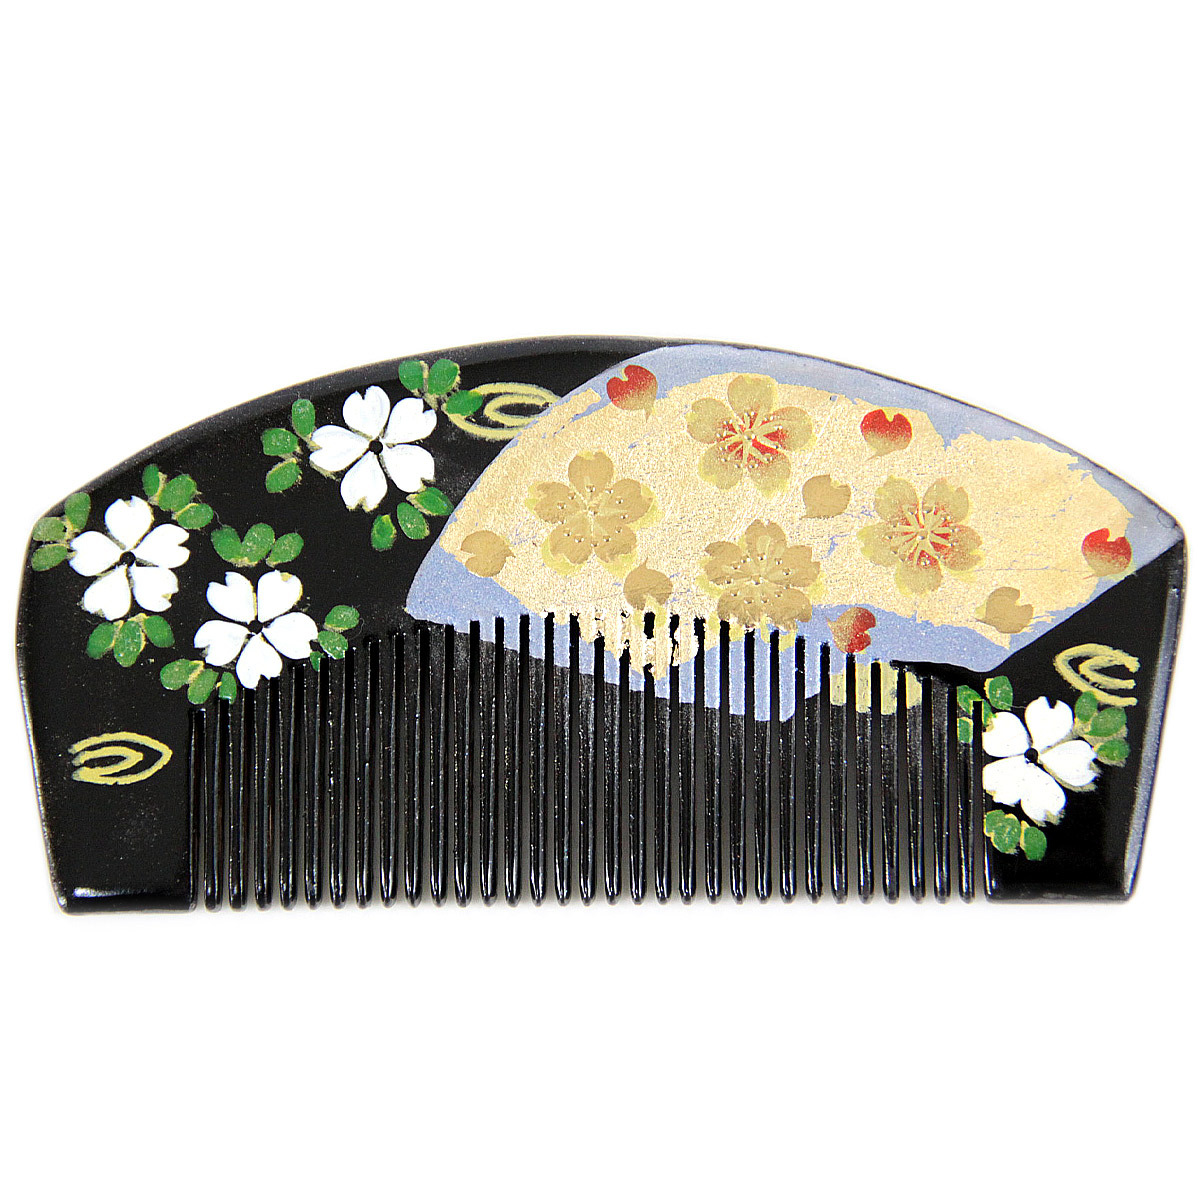 激安の 櫛かんざし -92- 前櫛 赤 蒔絵 黒 髪飾り 半京 桜と扇 着物、浴衣